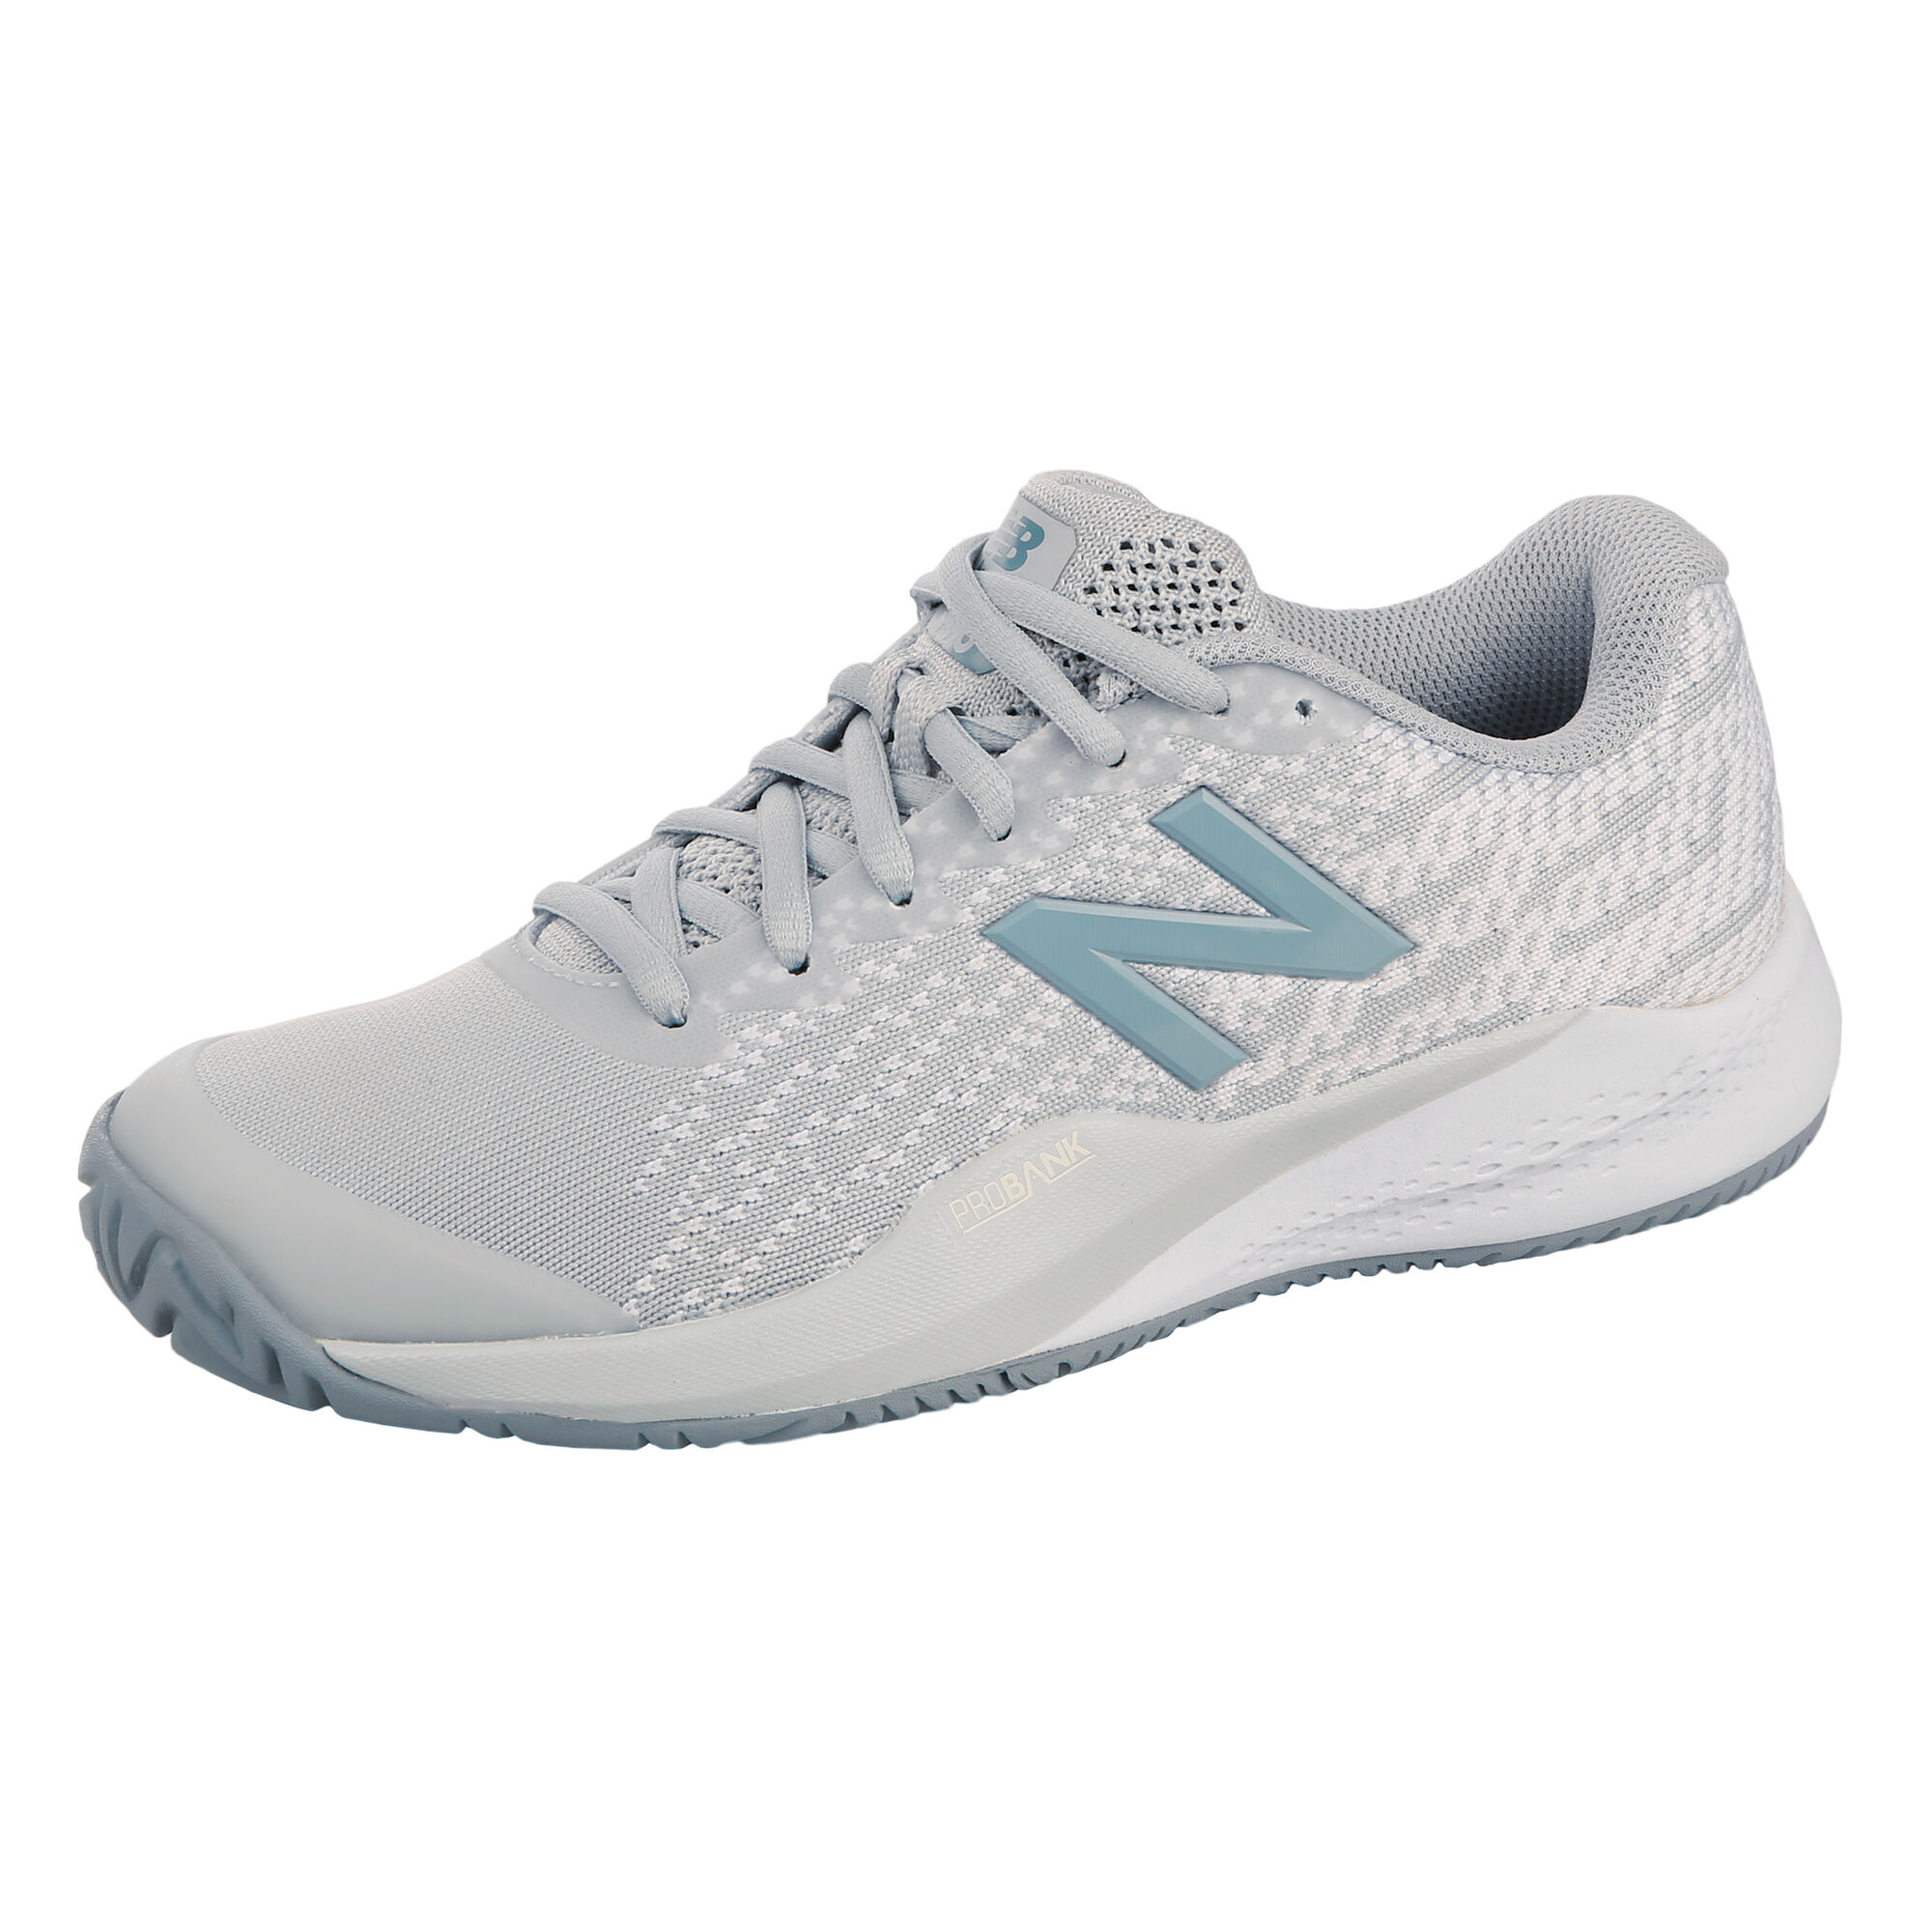 buy New Balance 996 V3 All Court Shoe Women Lightgrey White online